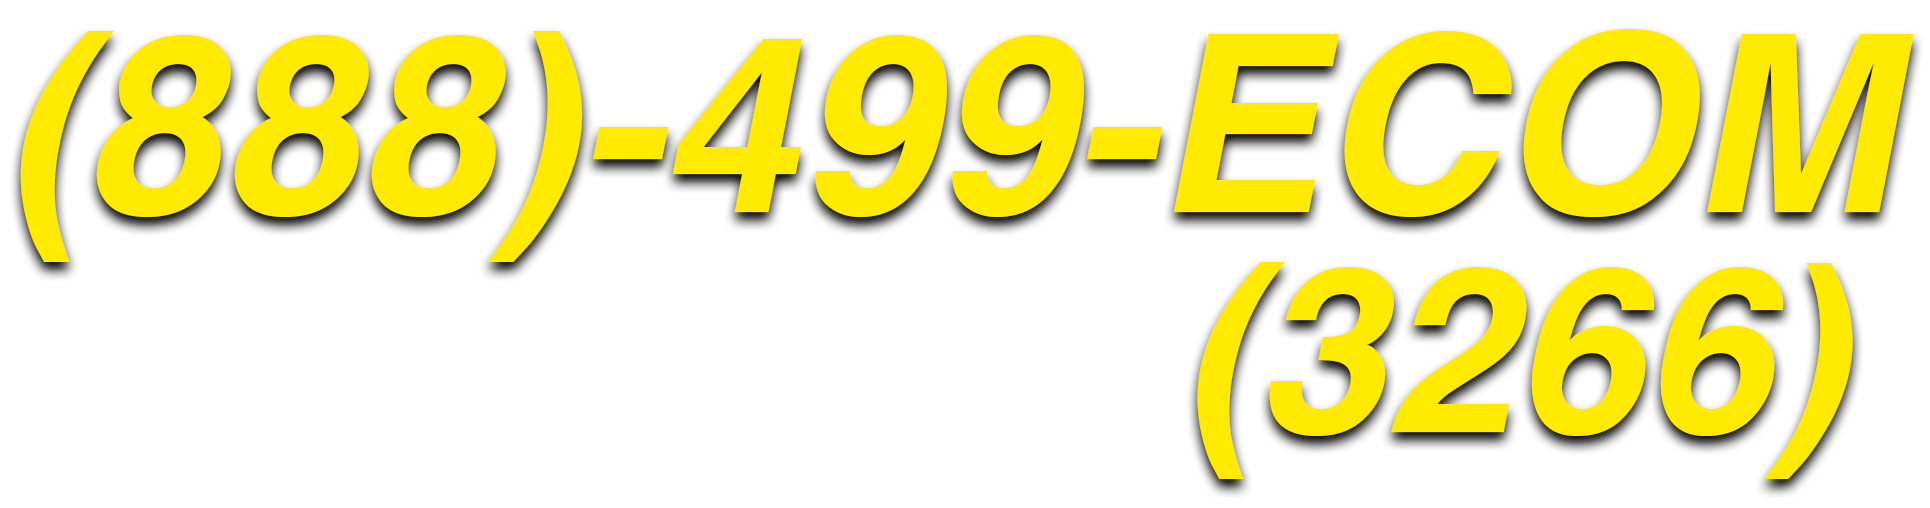 888-499-3266